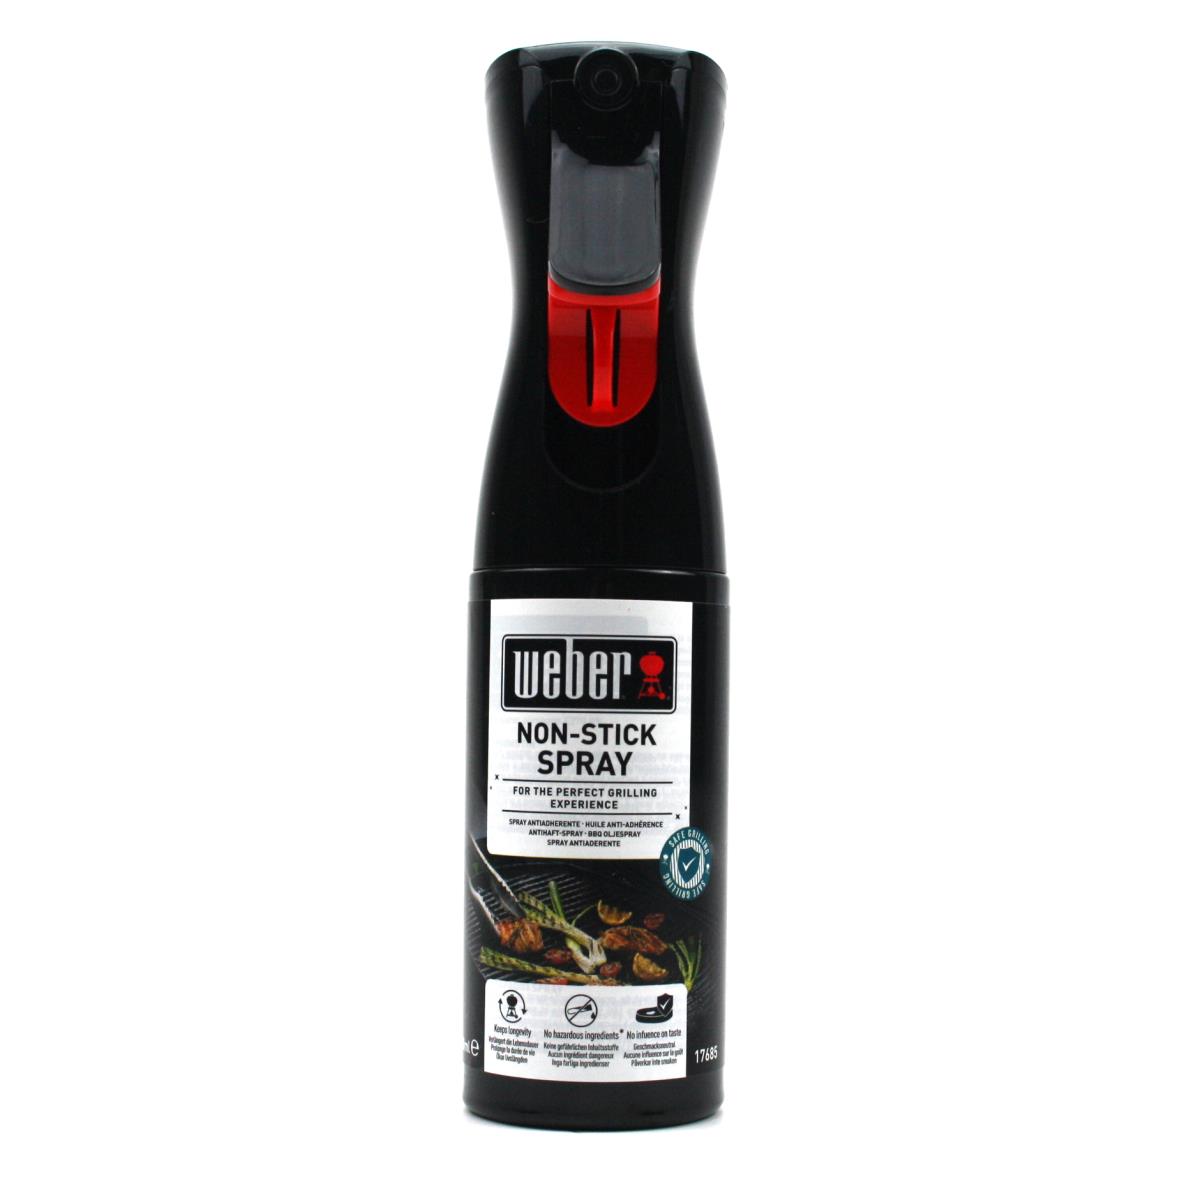 Weber Non Stick Spray 200 ml Grillreinigung Reinigungsmittel Antihaftspray Grill,Weber ,17685, 077924051357